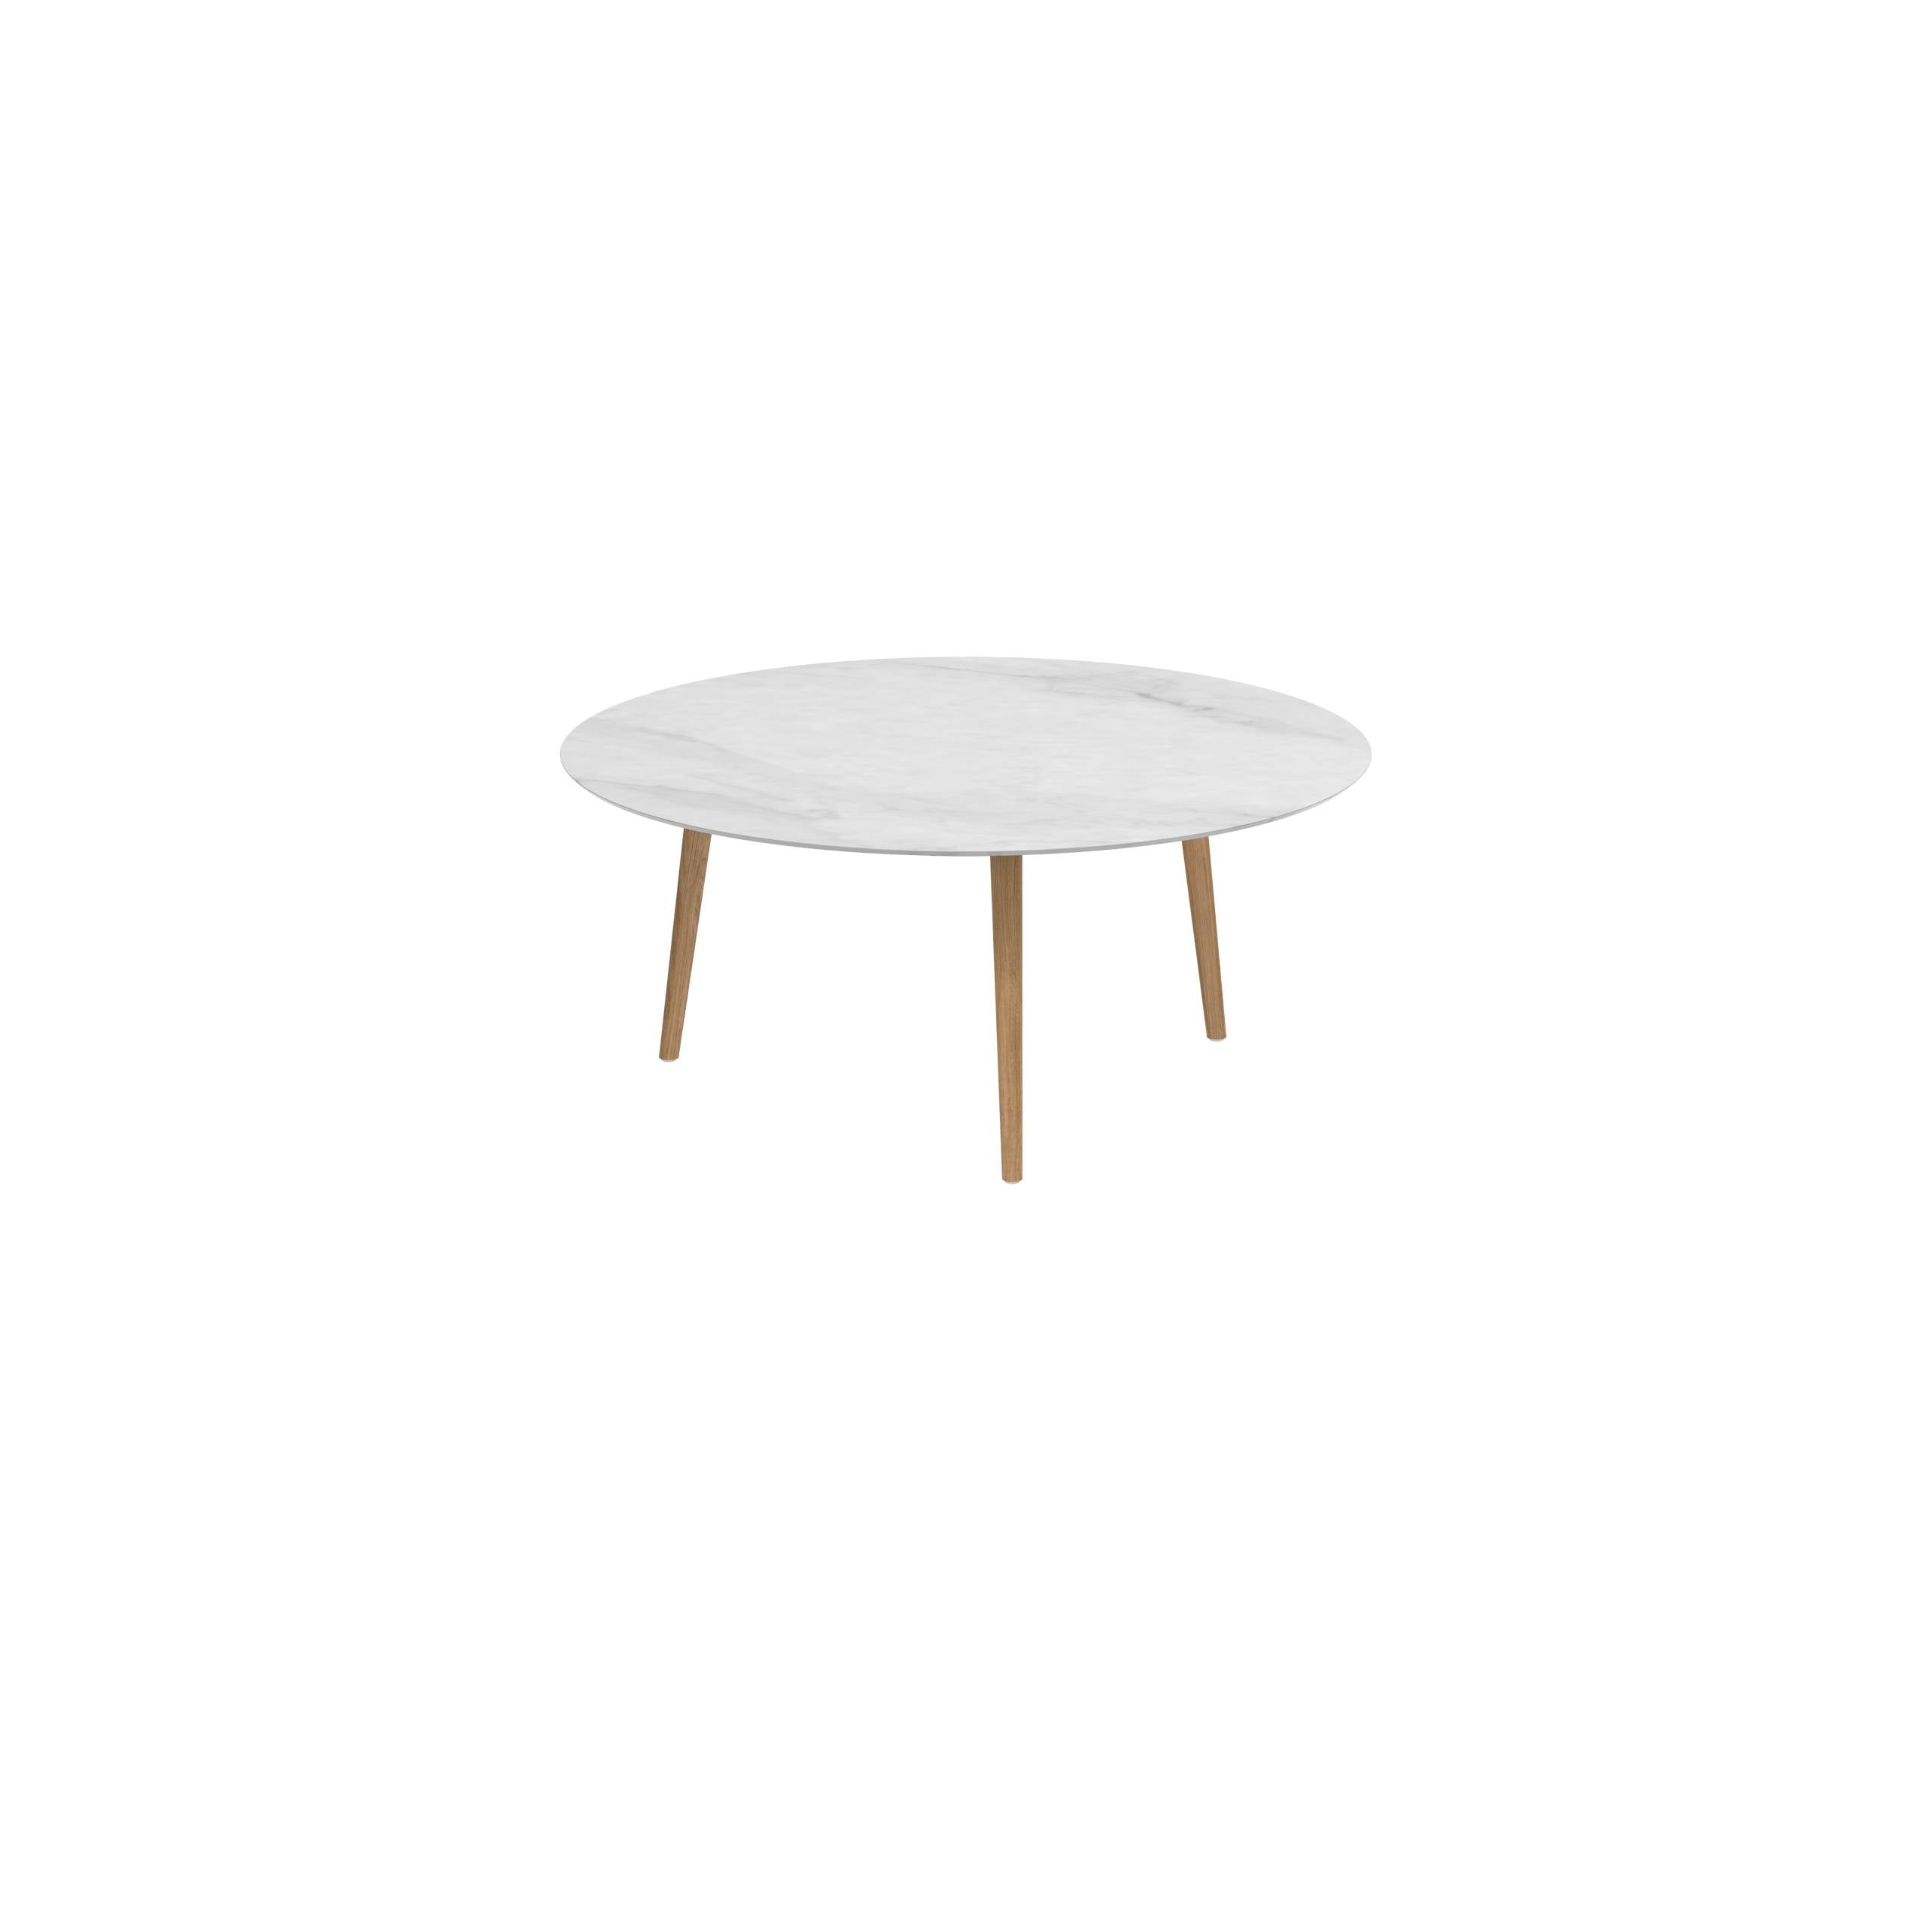 Styletto Low Dining Table Ø 160cm Teak Legs Ceramic Top Bianco Statuario